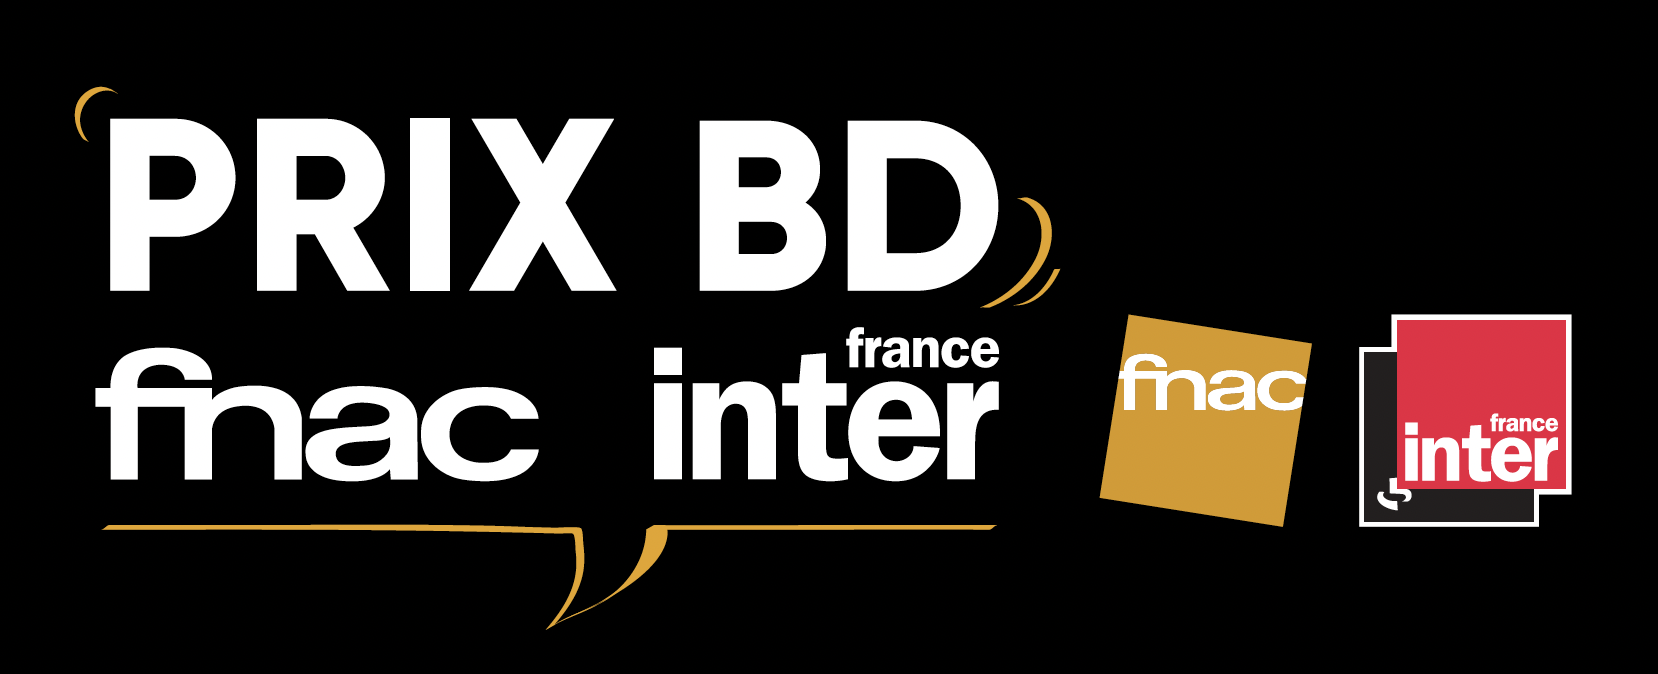 La Fnac et France Inter organisent Prix BD Fnac France Inter